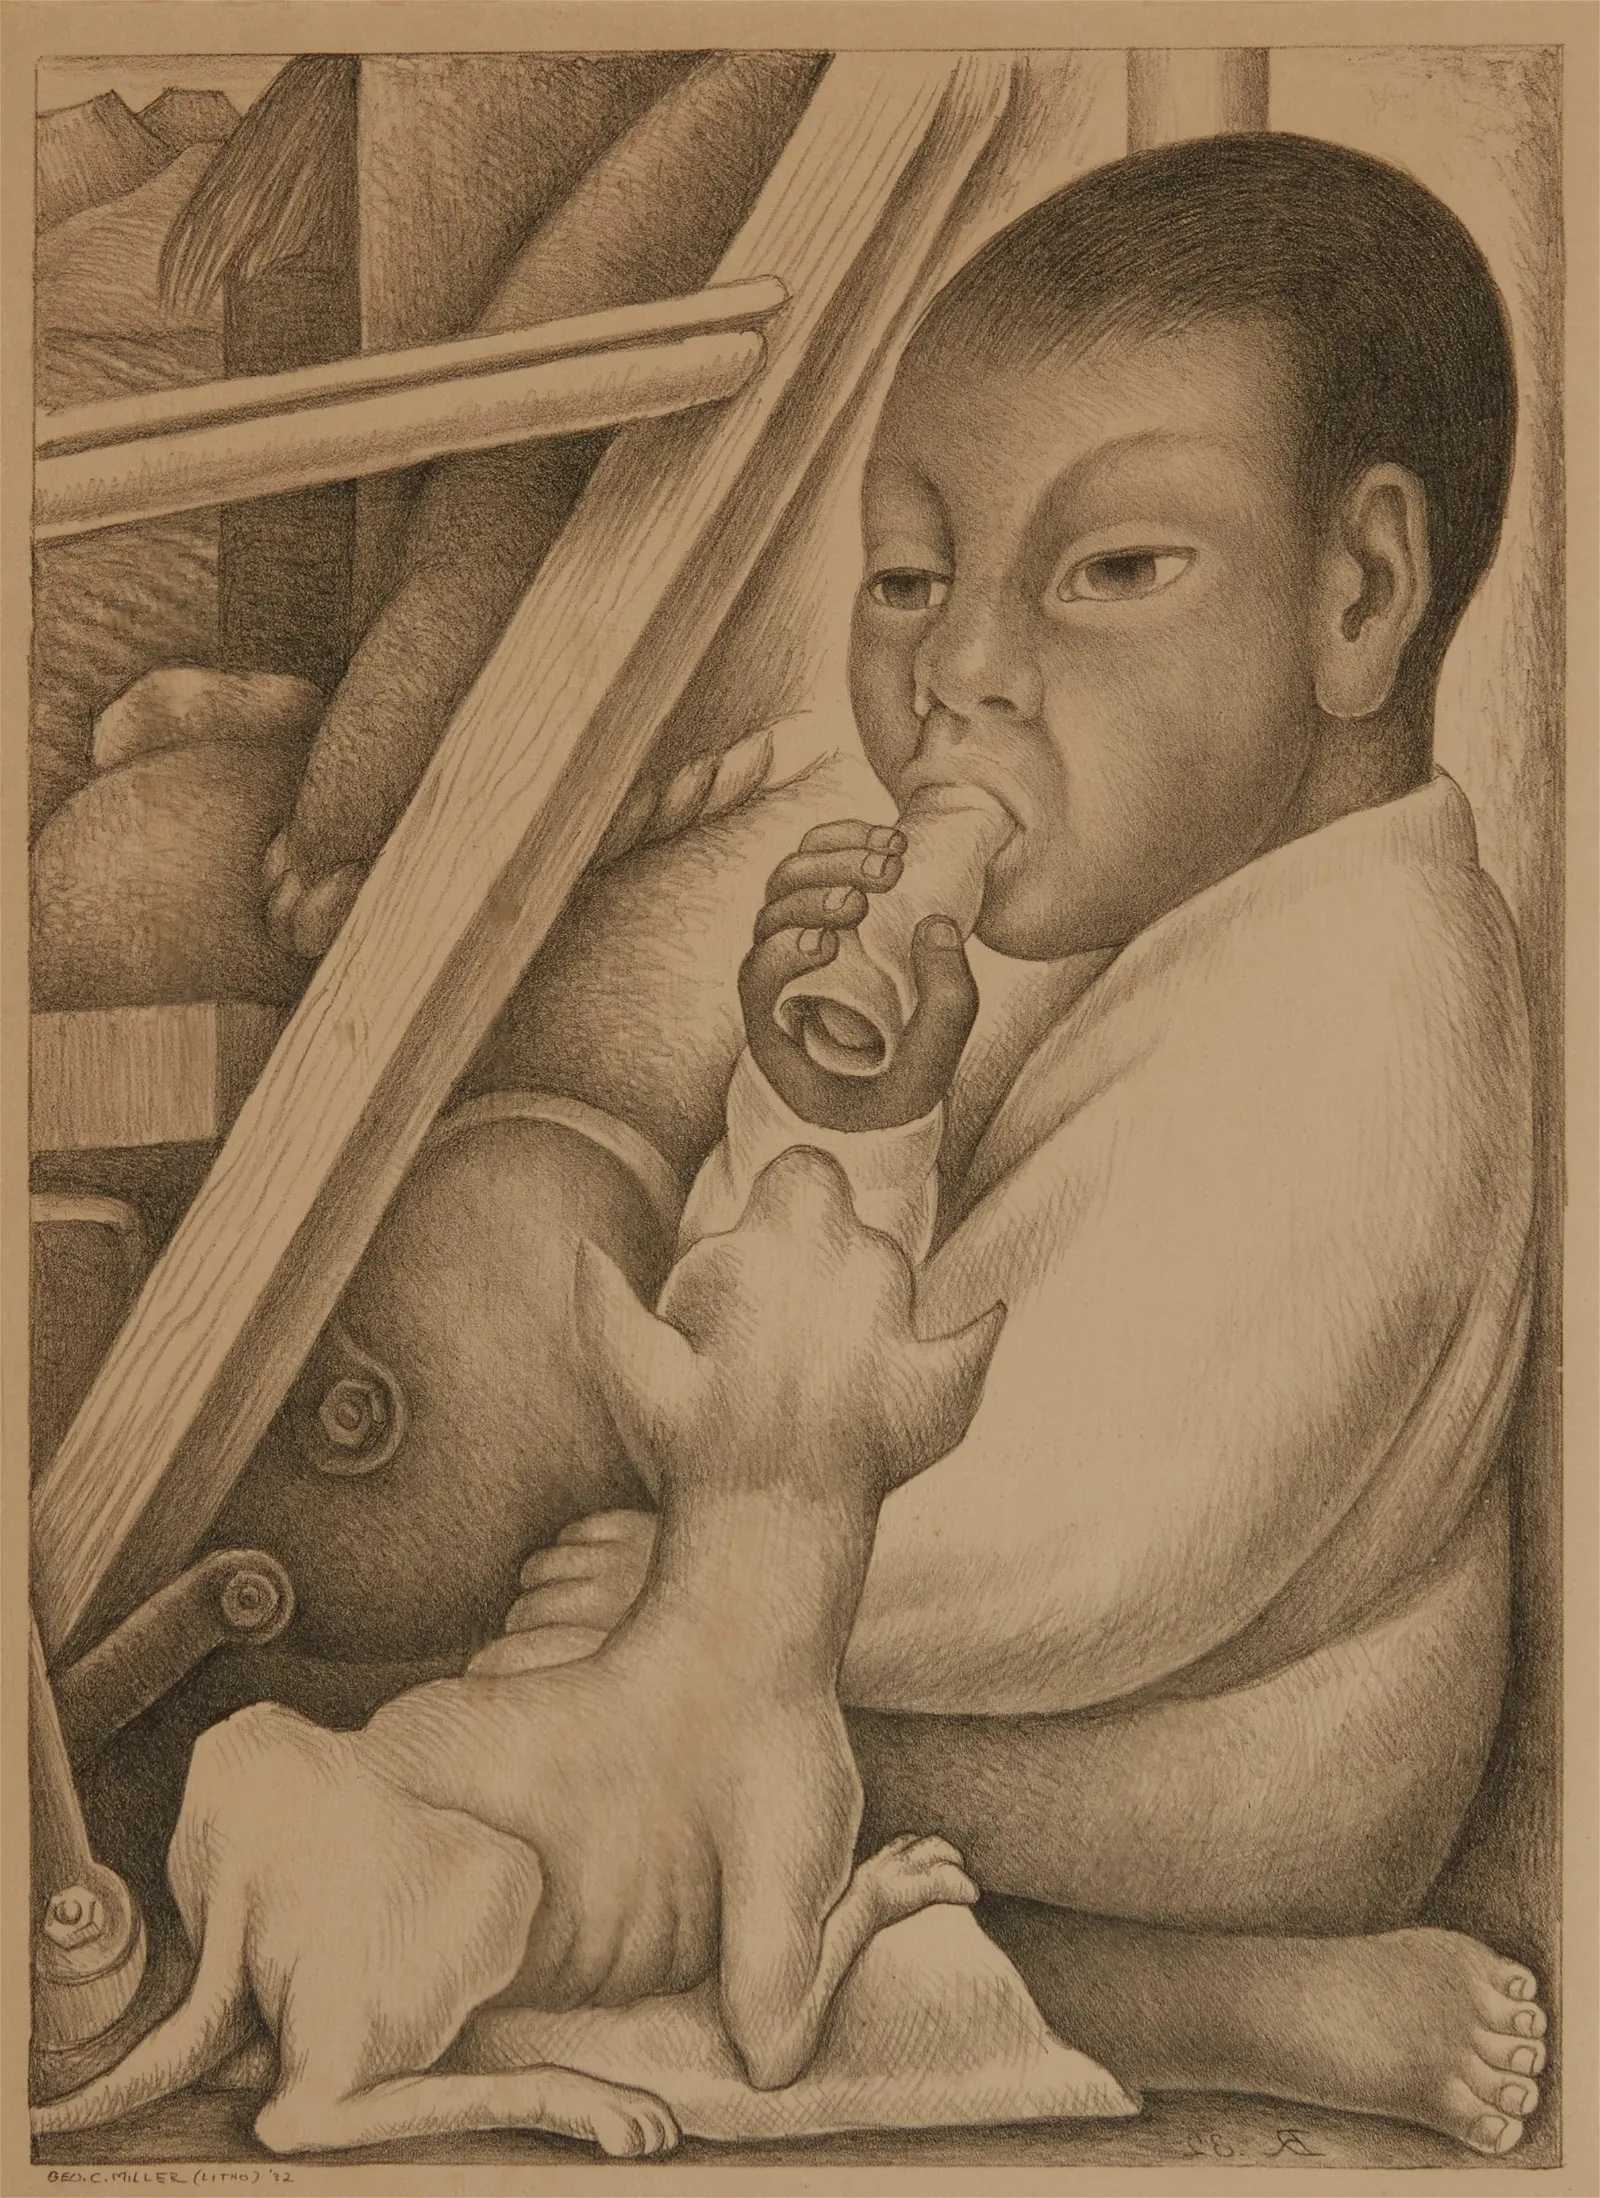 Diego Rivera, 'El Nio del Taco (Boy with Taco),' estimated at $6,000-$8,000 at John Moran.Diego Rivera, 'El Nio del Taco (Boy with Taco),' estimated at $6,000-$8,000 at John Moran.